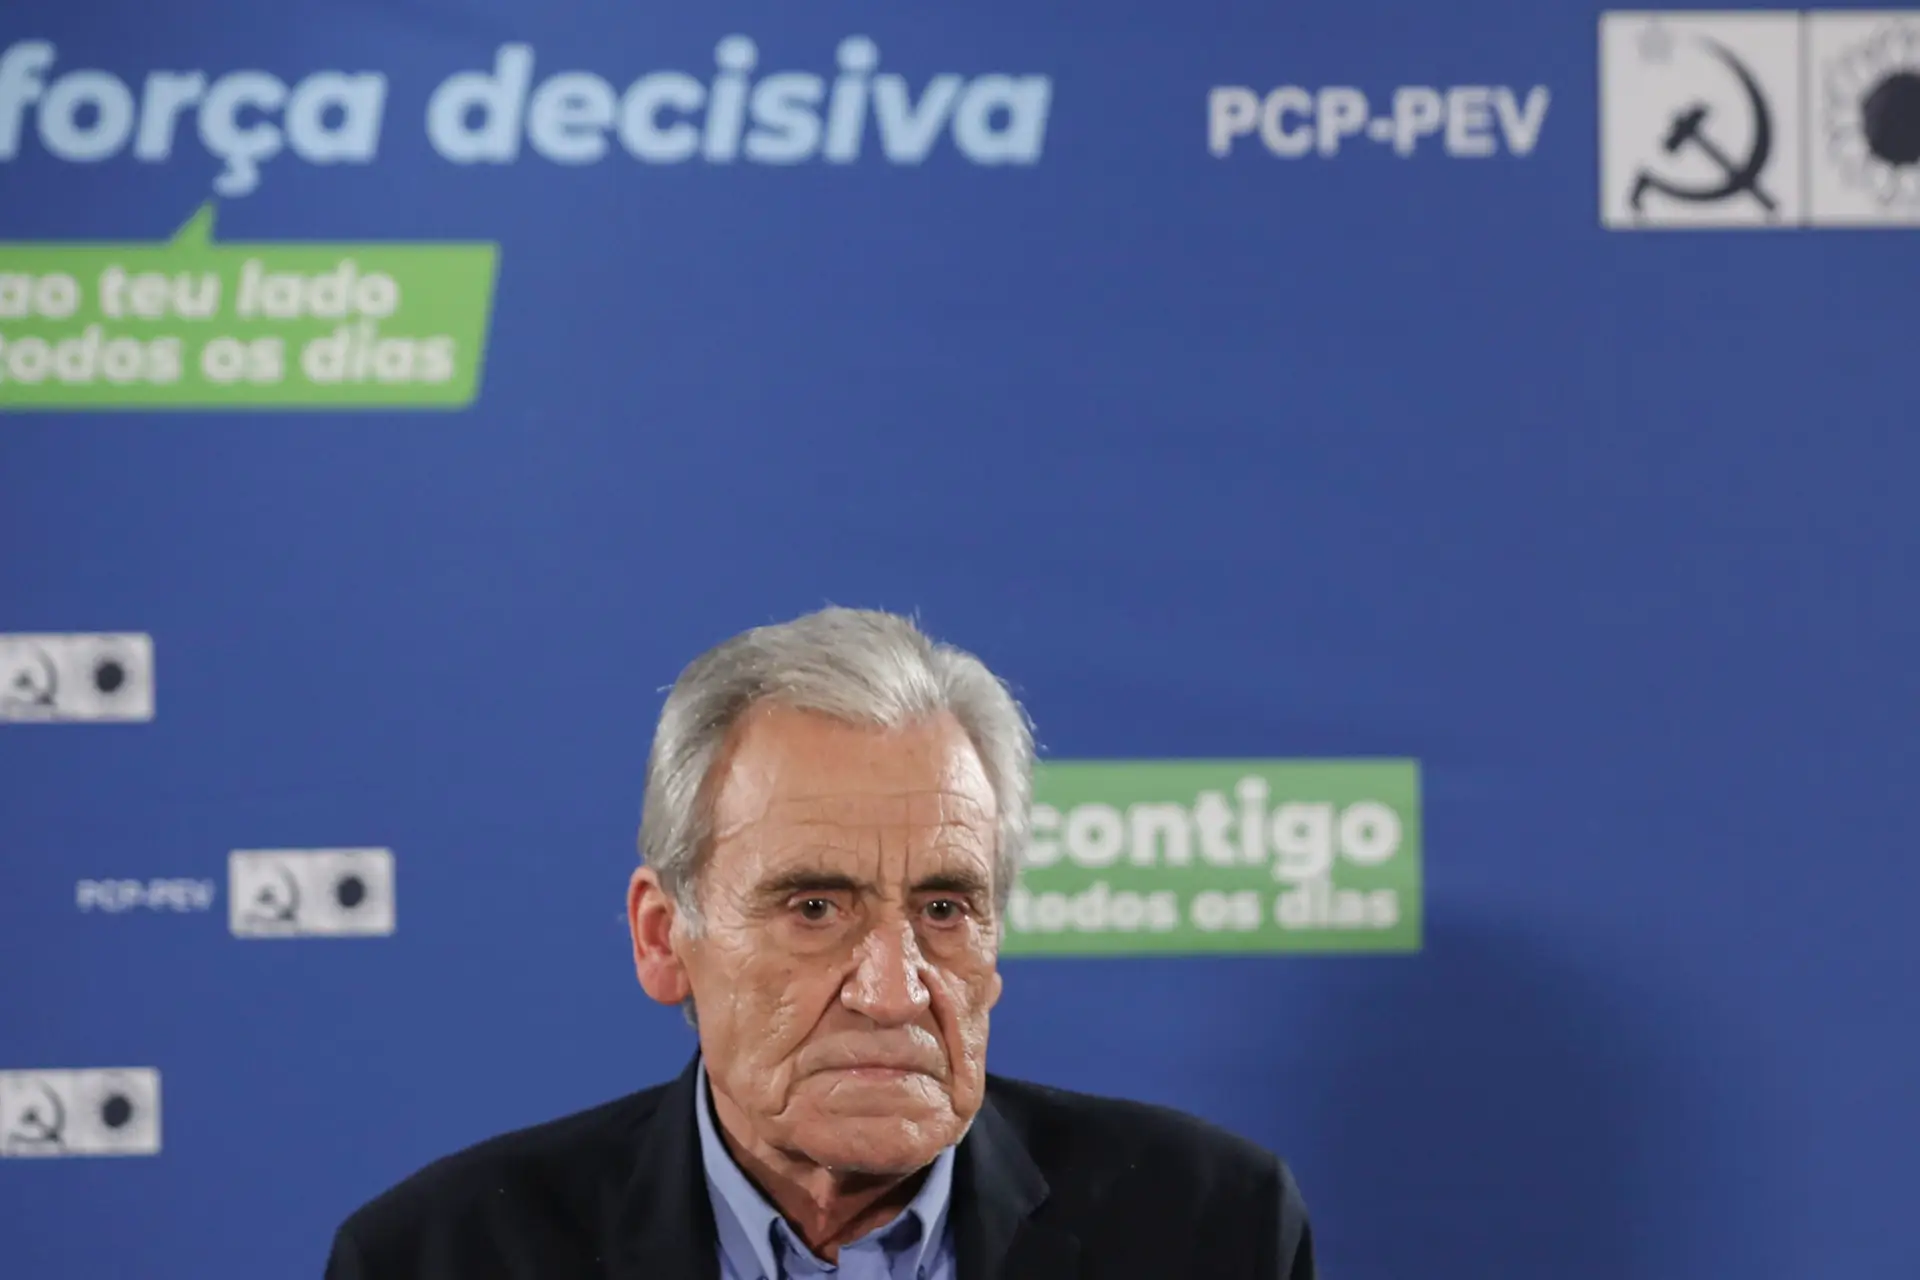 Jerónimo lamenta “insistente mentira da responsabilização do PCP” pela realização de eleições